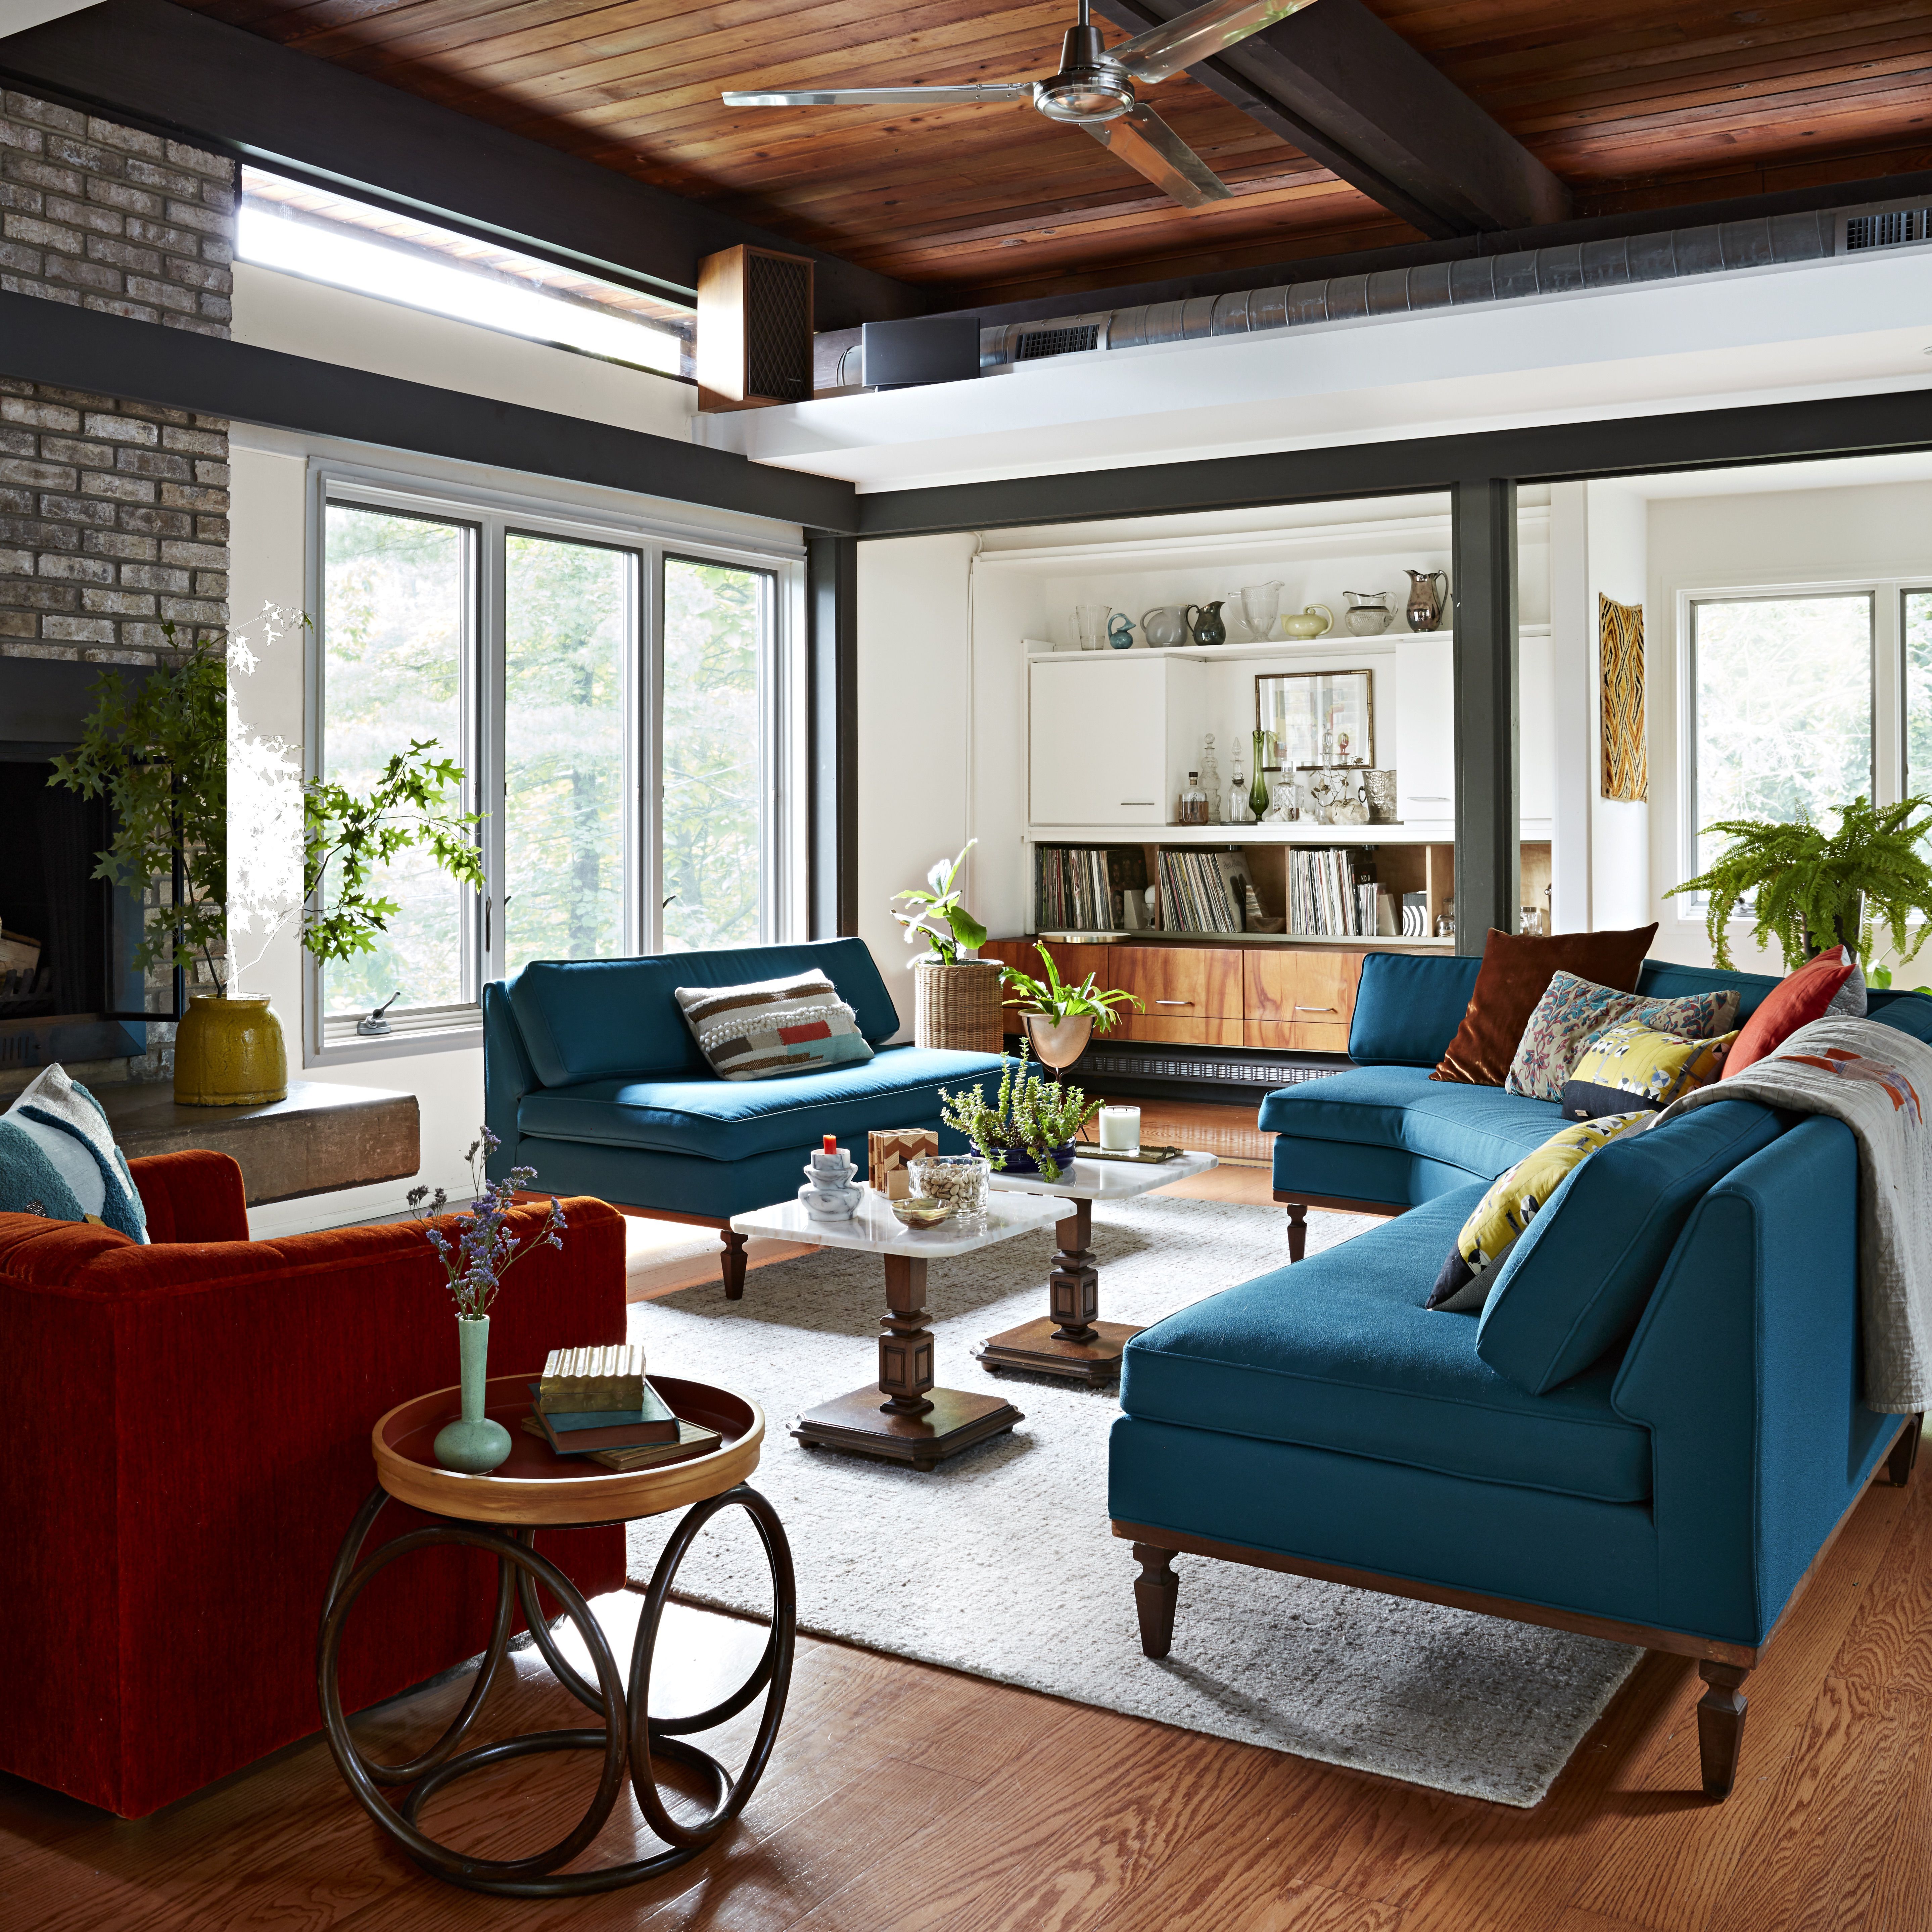 Câu chuyện về ngôi nhà BHG Adoff - phòng khách hiện đại giữa thế kỷ với lò sưởi bằng đá và ghế sofa màu cam và xanh mòng két